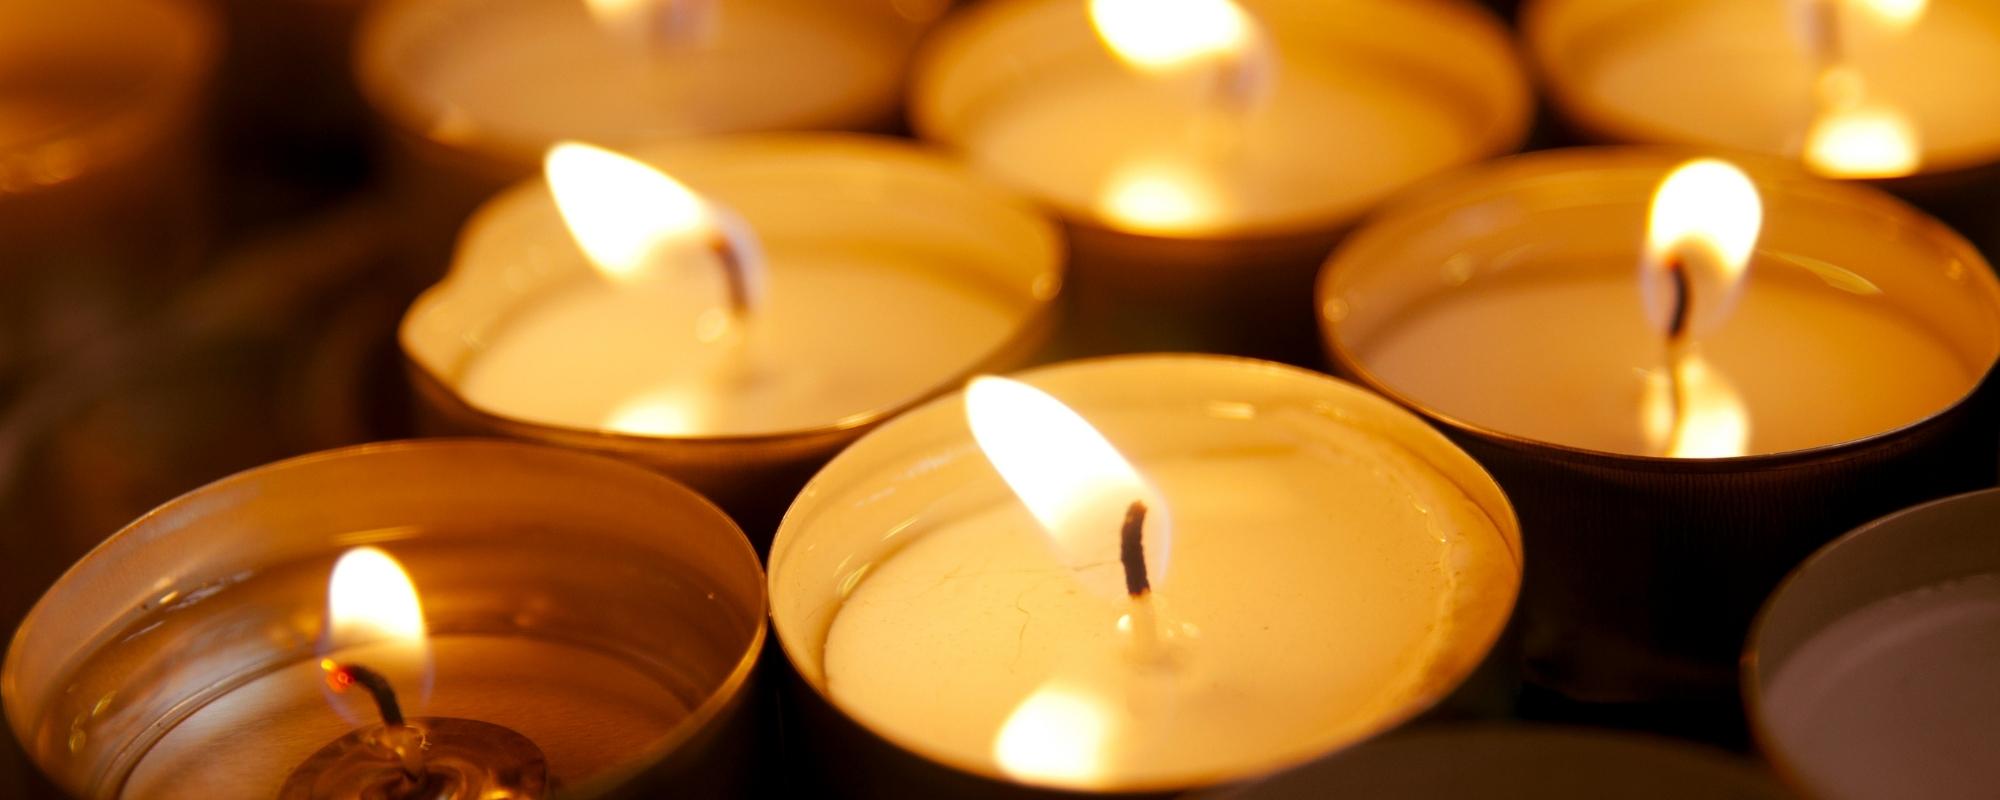 Yahrtzeit Memorial Candle - Shuvah Israel